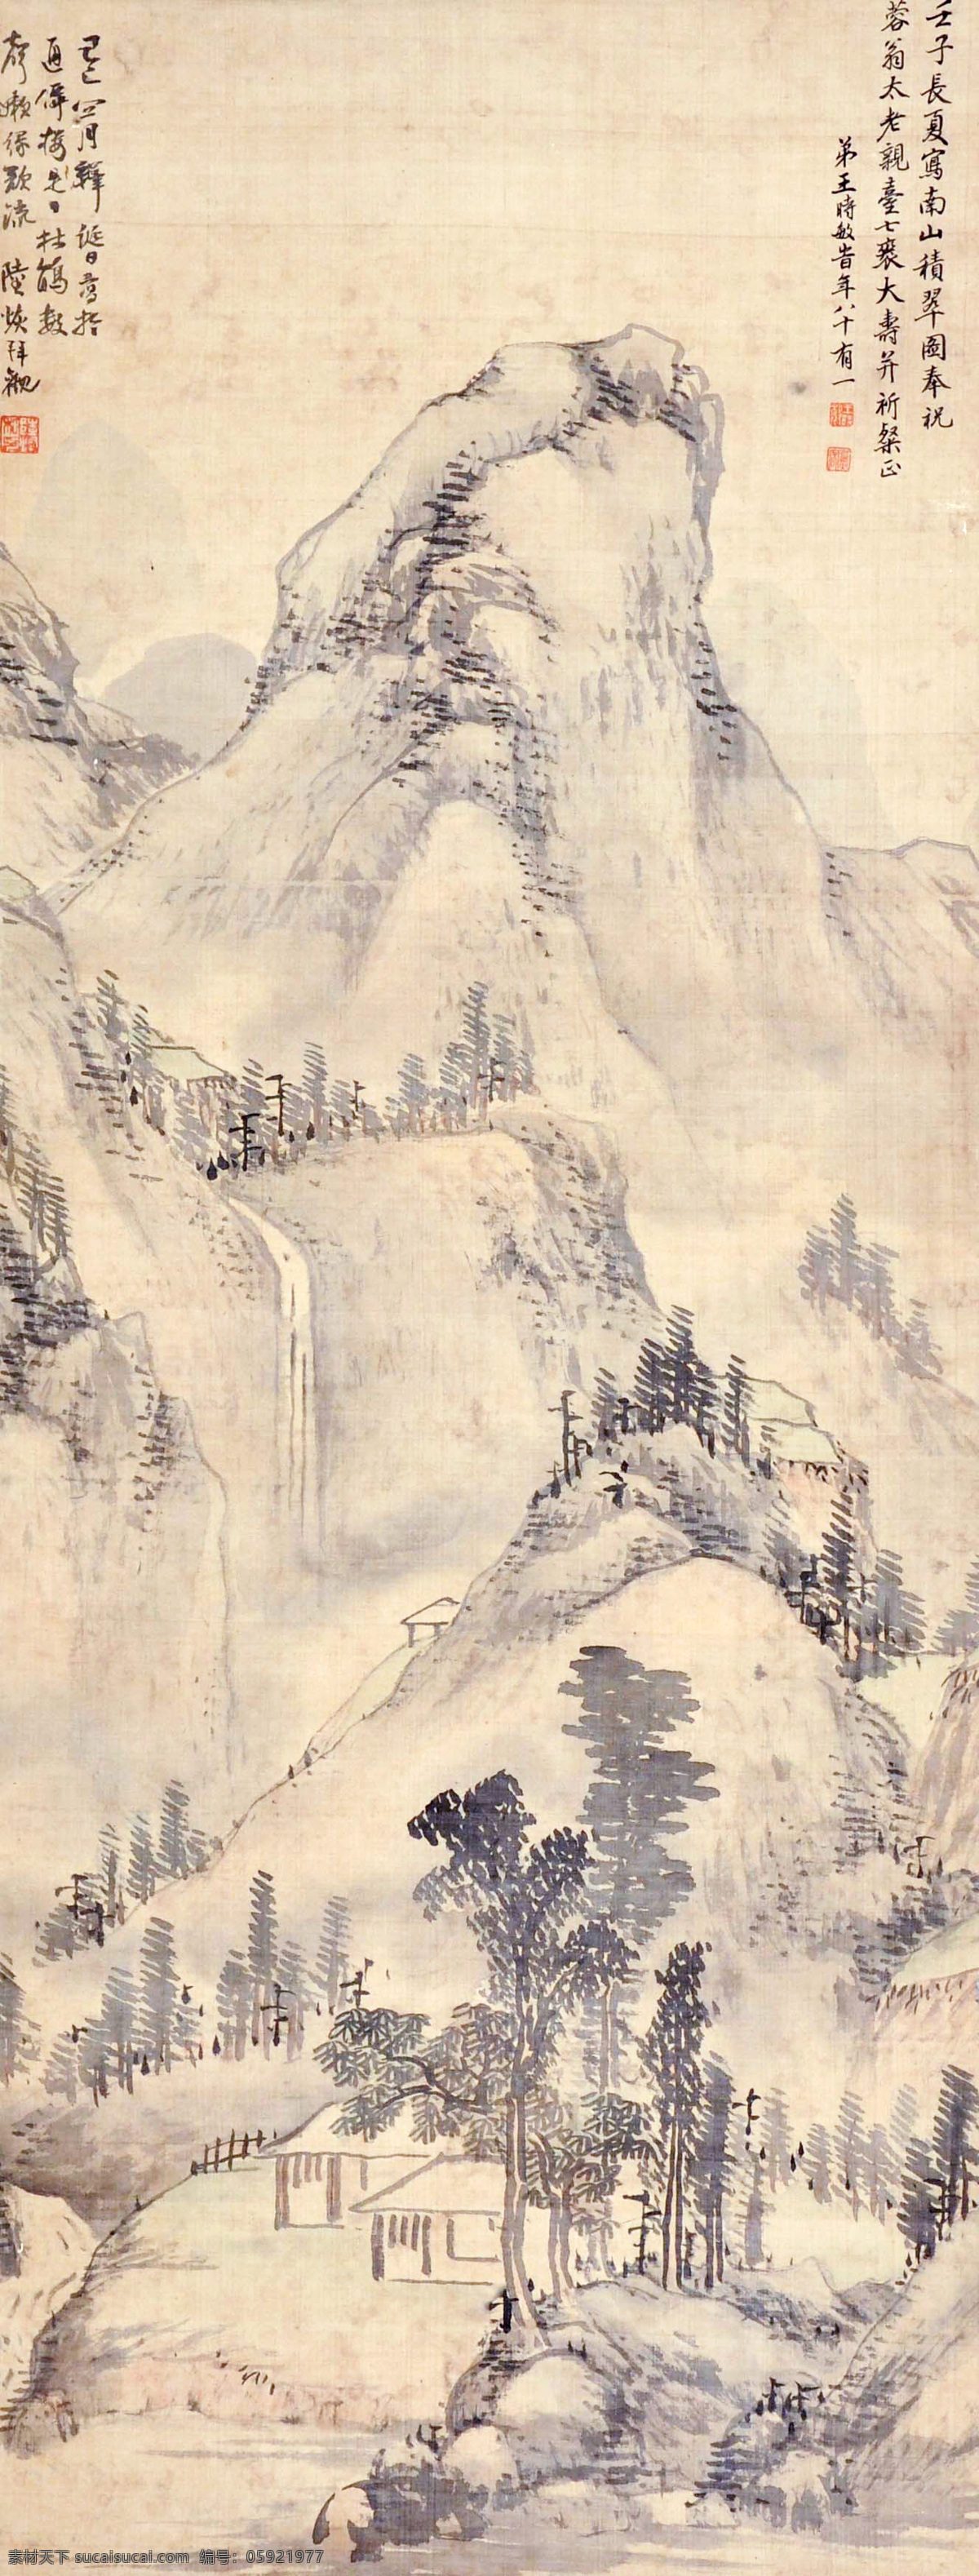 王时敏 山水 国画 中国画 传统画 名家 绘画 艺术 文化艺术 绘画书法